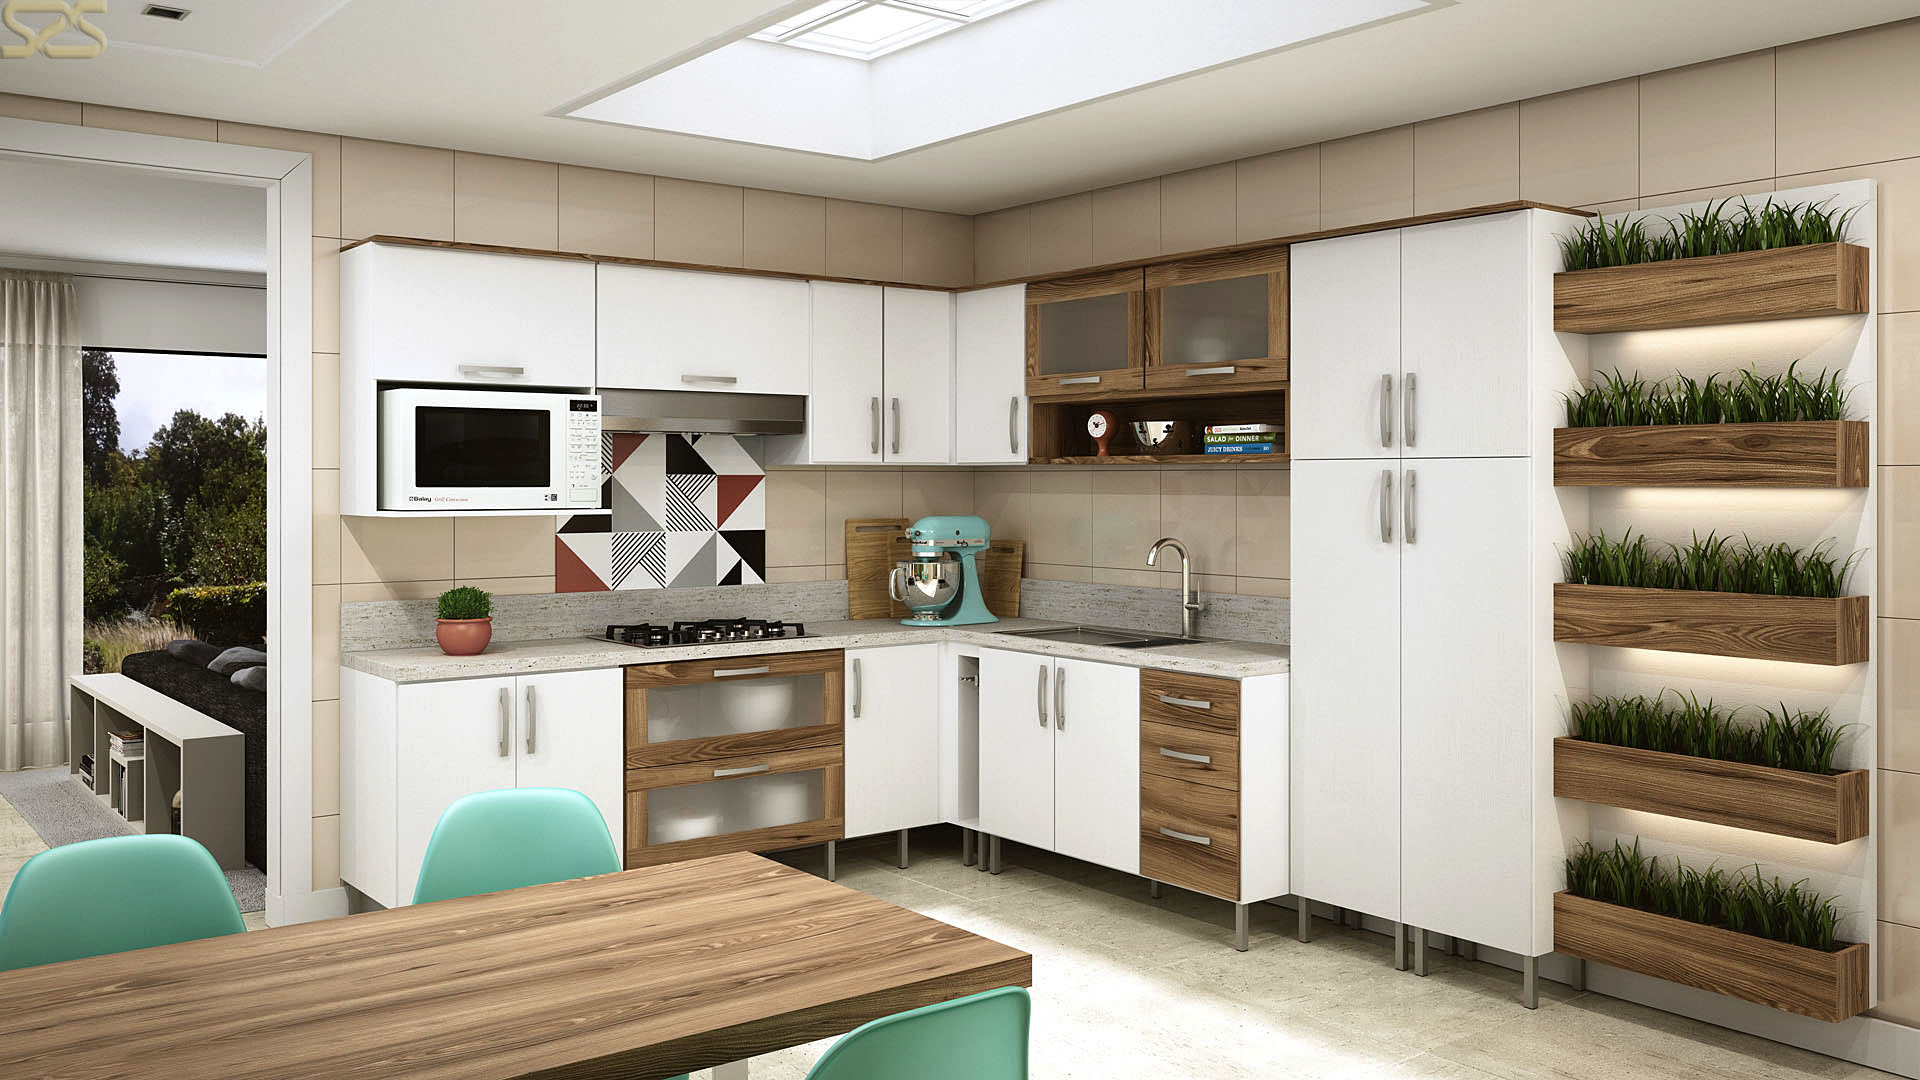 Cozinha Compacta Moderna da Celmobile em imagem publicitária produzida pelo Studio 25